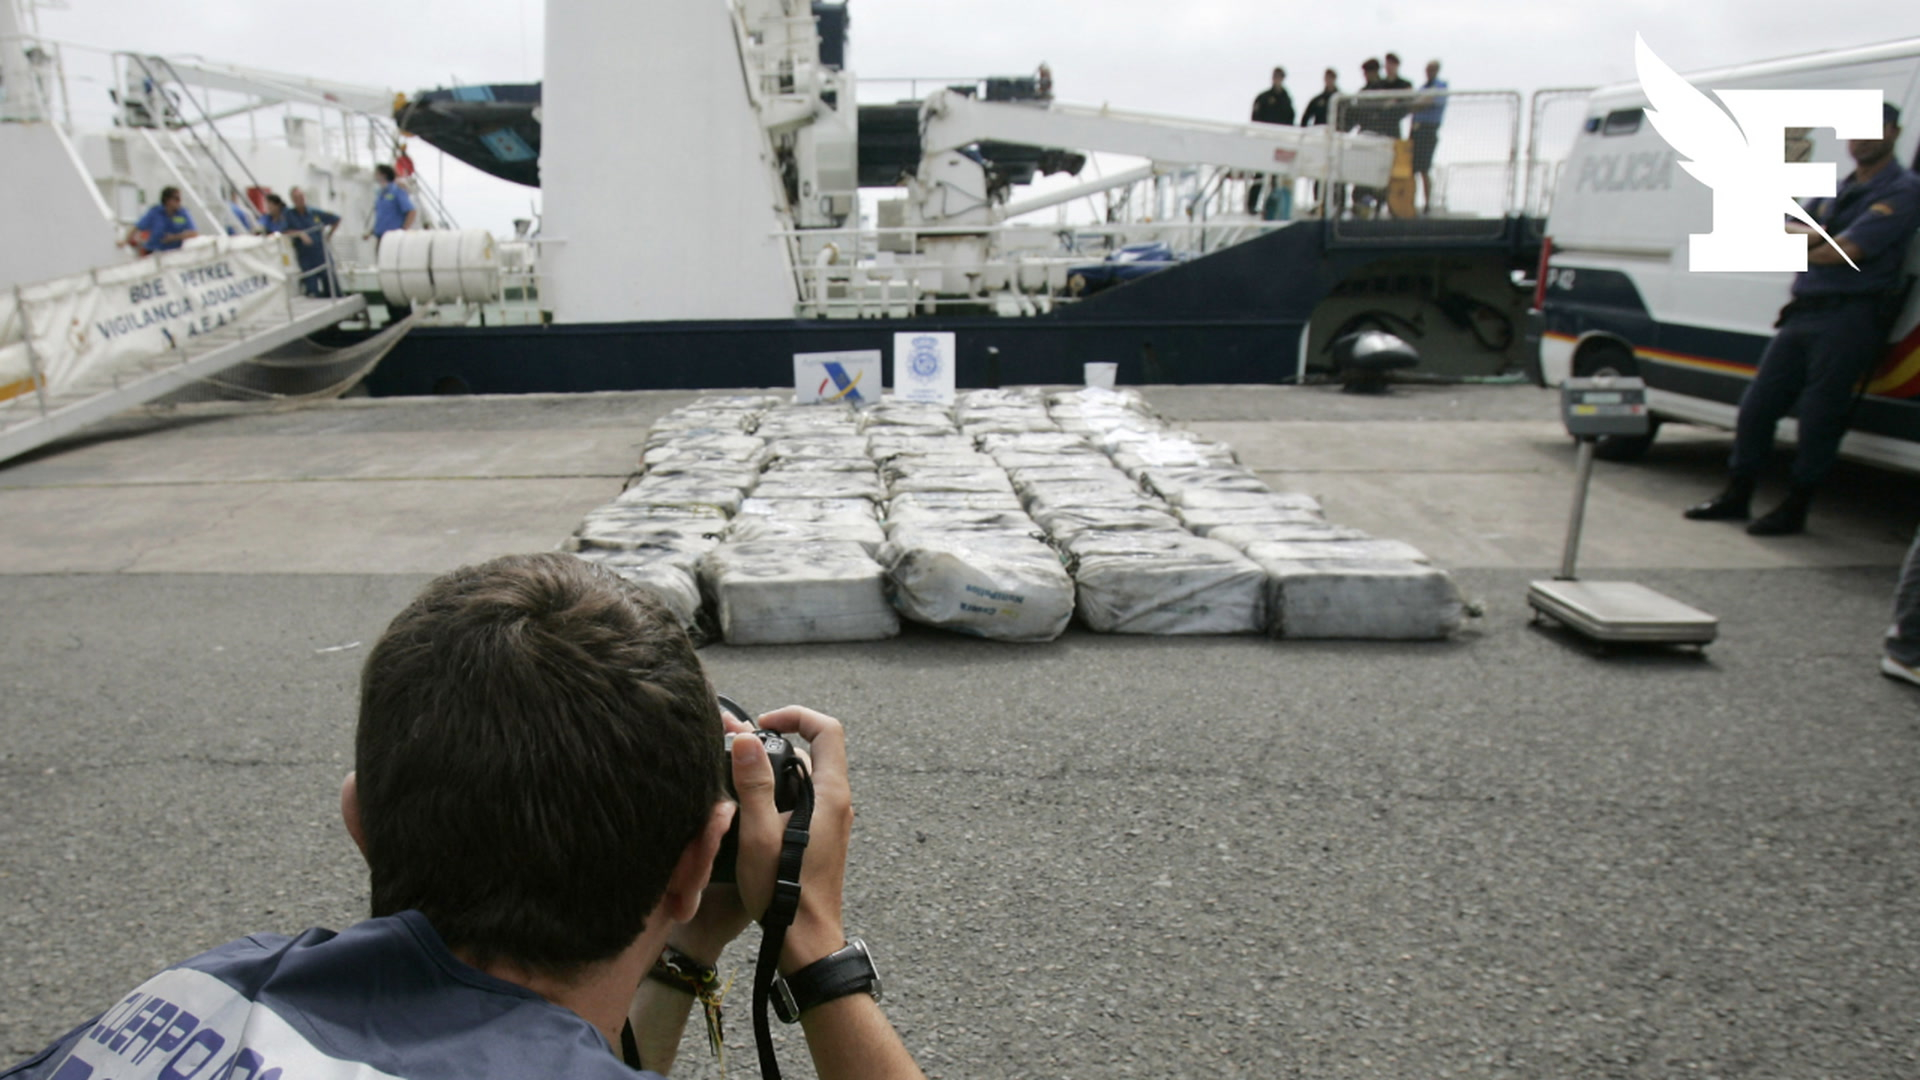 Espagne: 4,5 tonnes de cocaïne saisies au large des îles Canaries